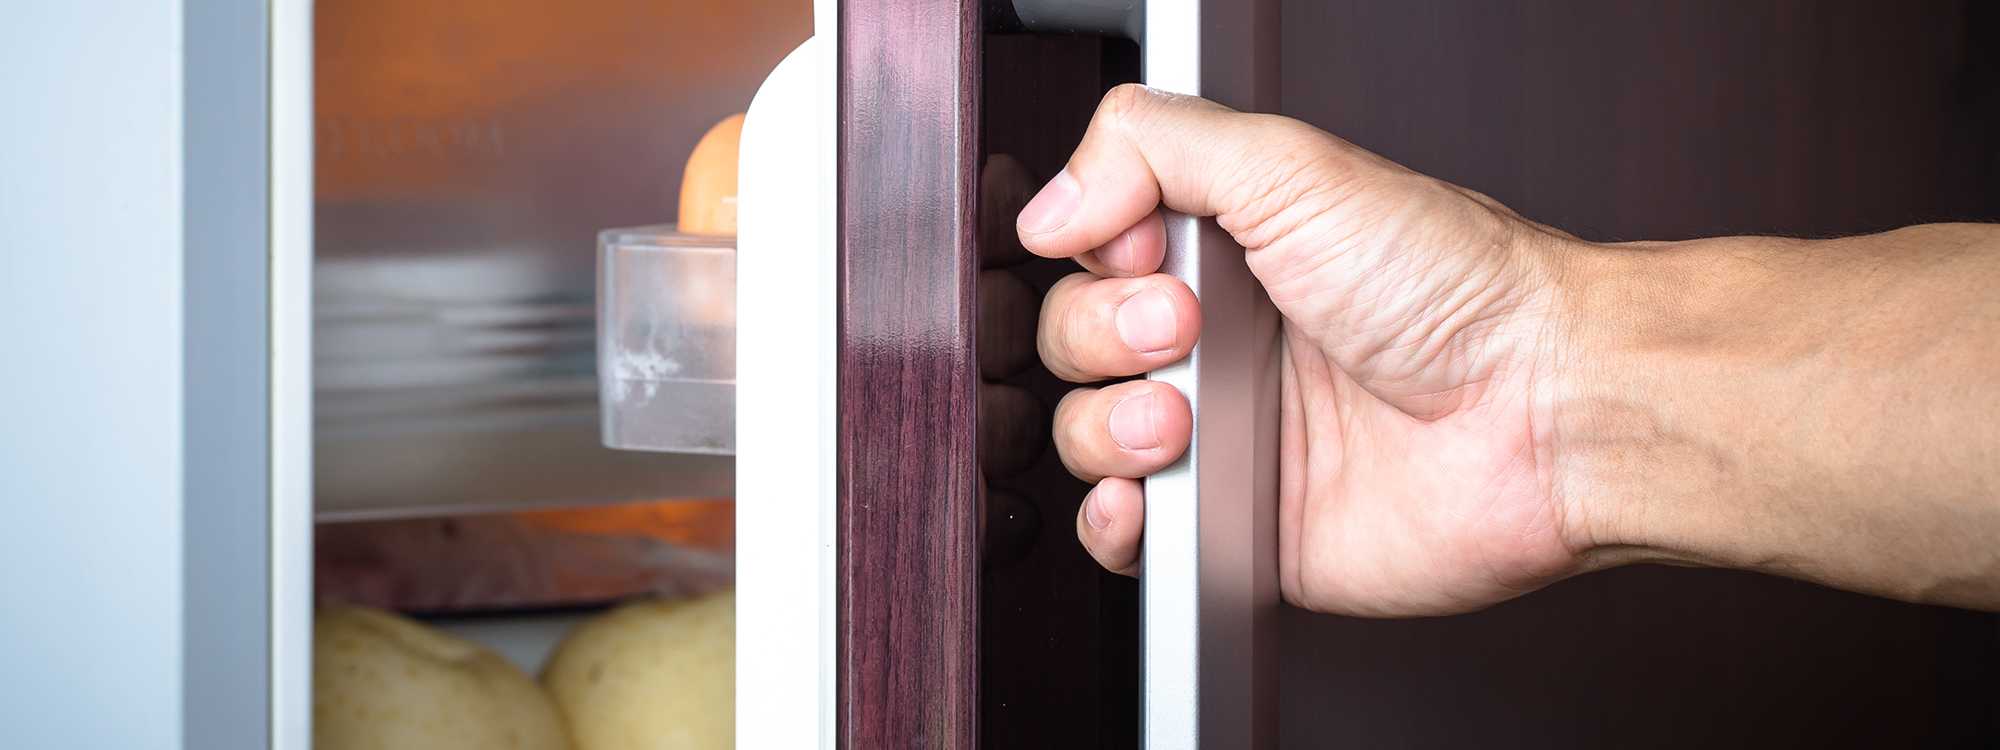 Стук в холодильнике - почему стучит холодильник и как исправить поломку